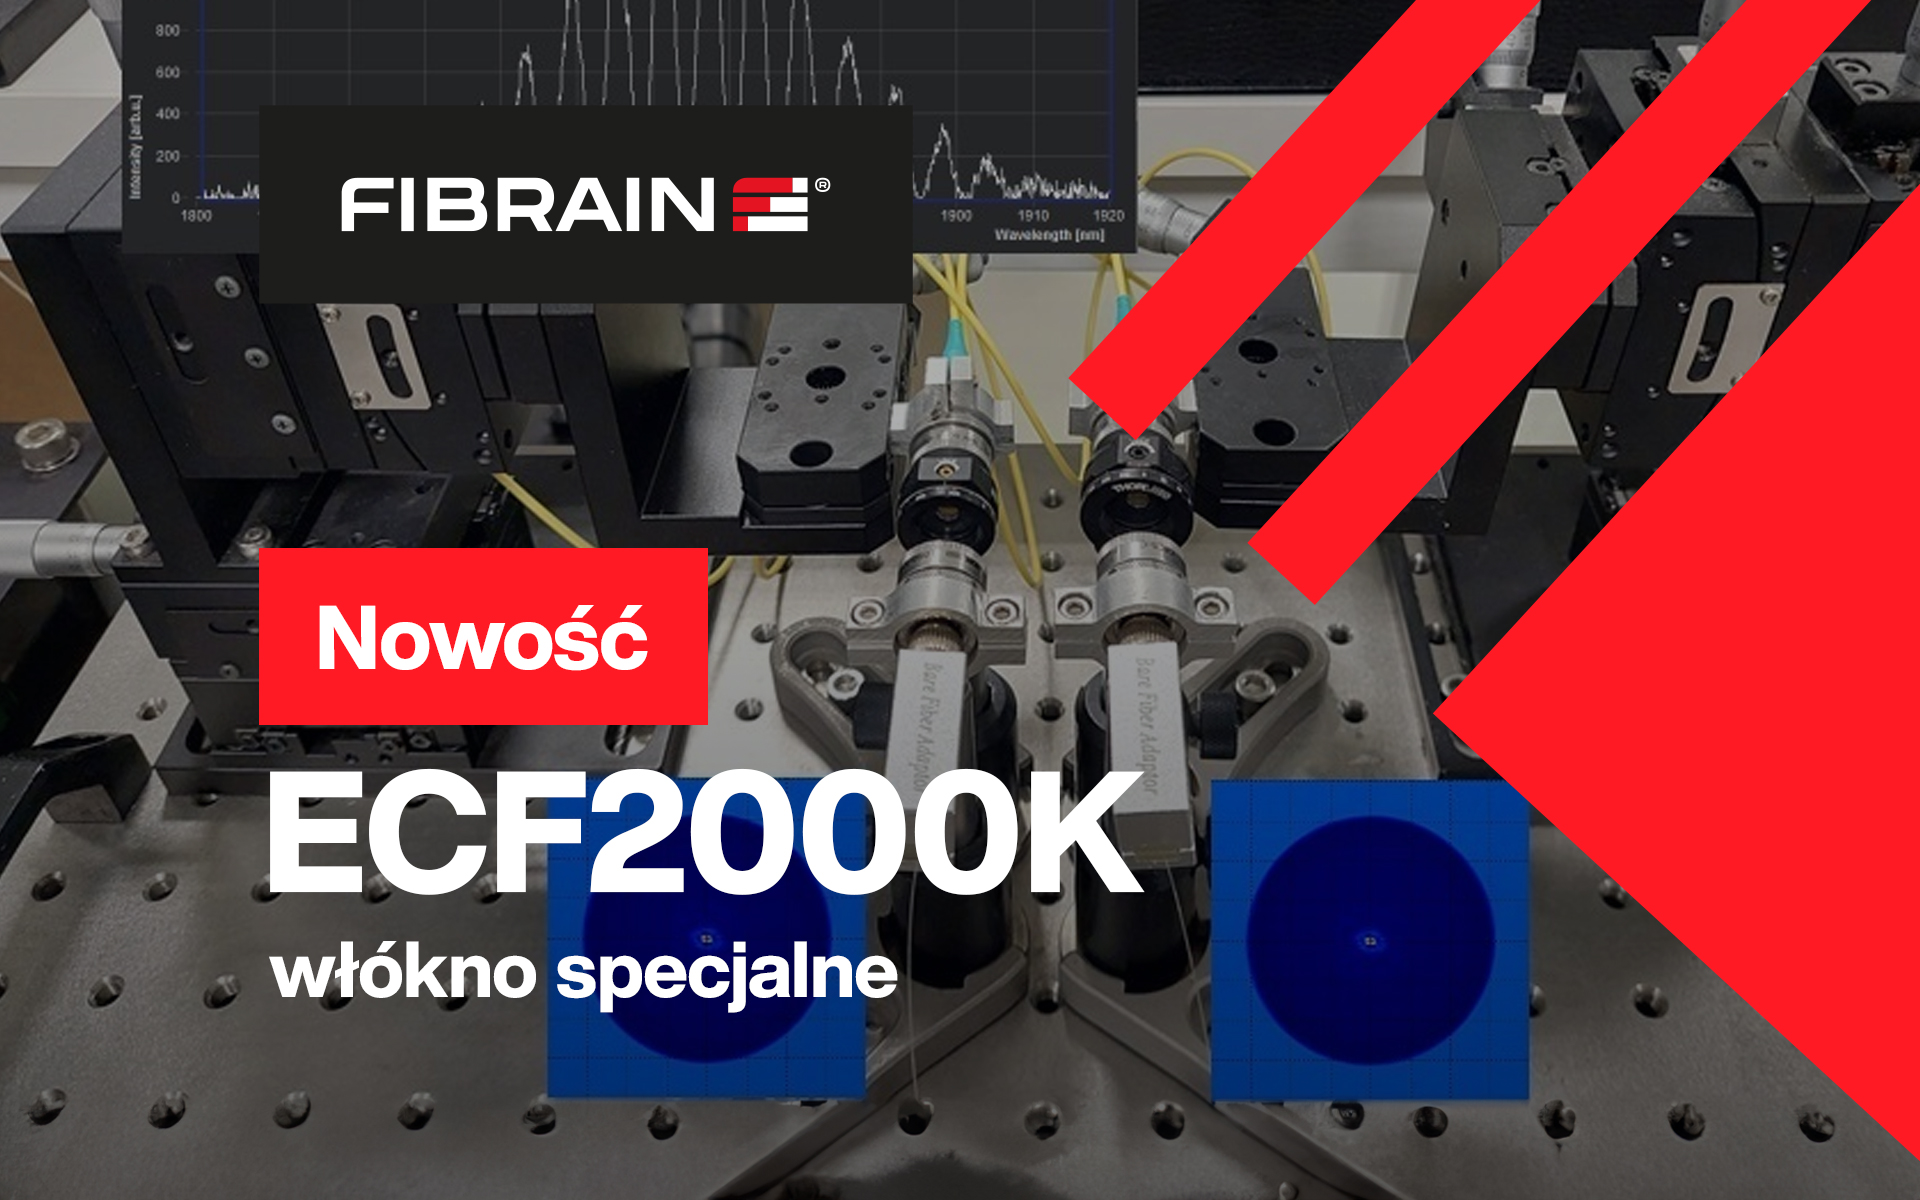 ECF2000K — nowy produkt FIBRAIN podbije rynek światłowodów specjalnych? Przekonaj się już dziś!